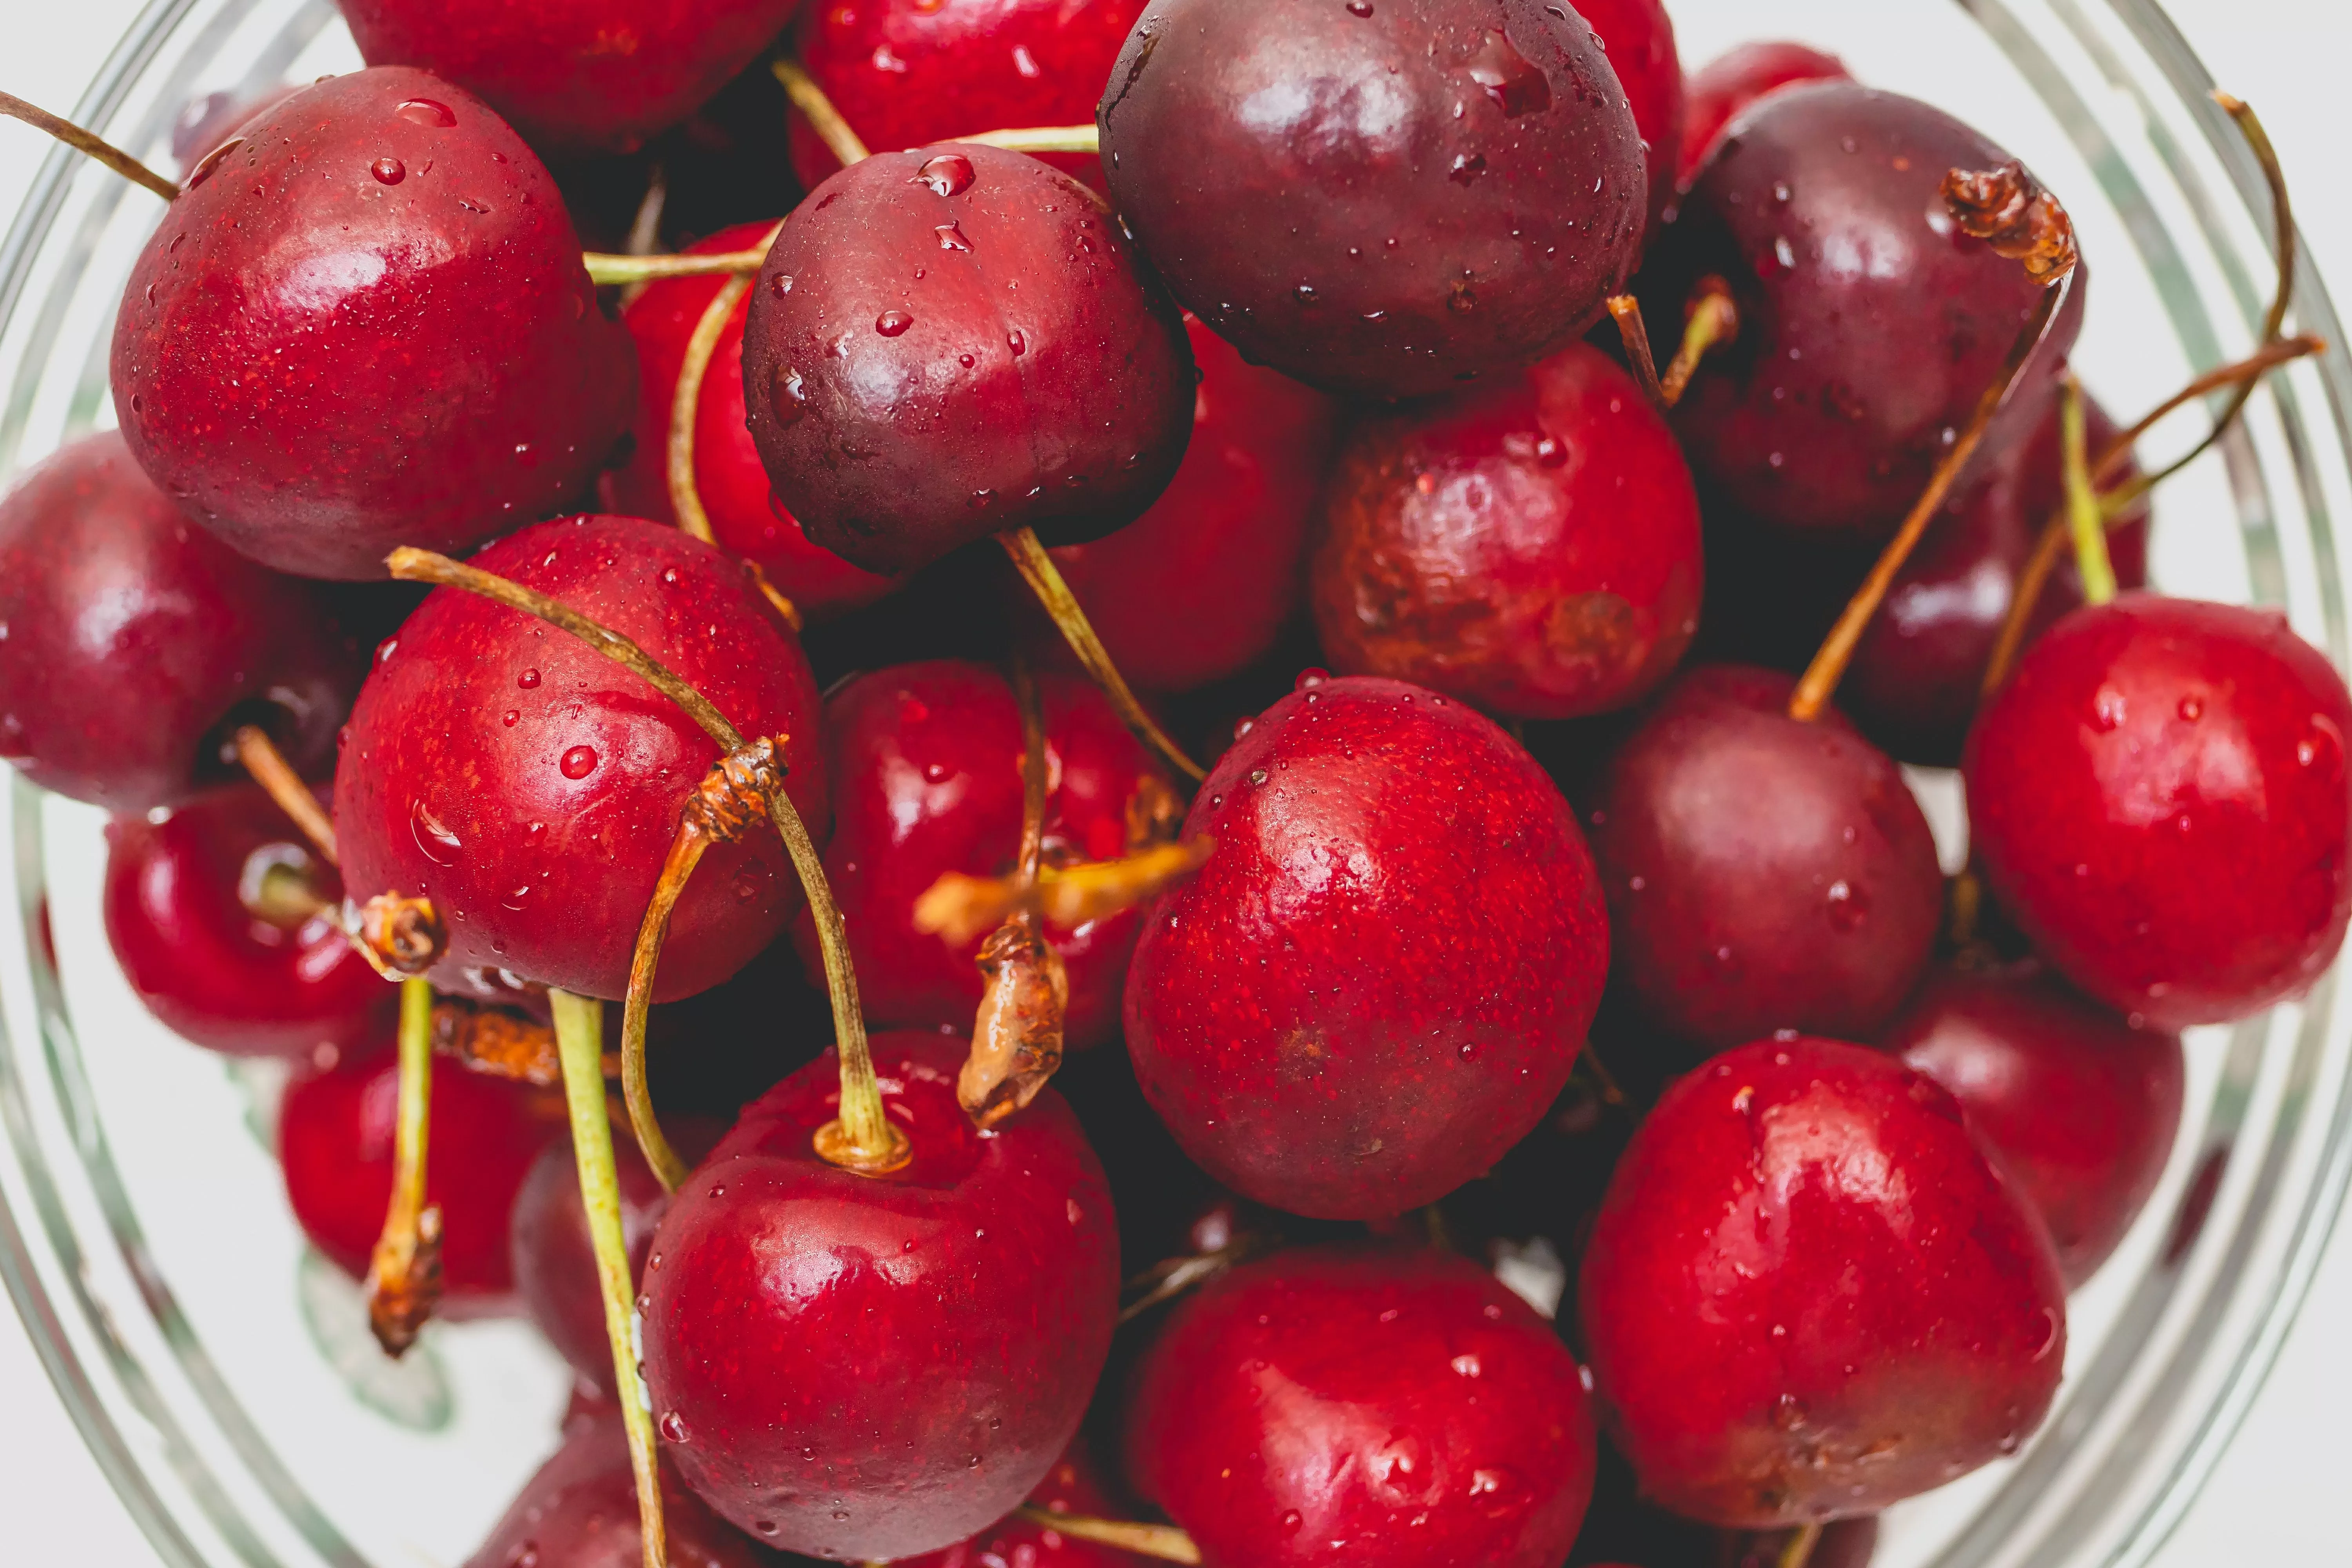 Le ciliegie: proprietà, usi e benefici per la salute